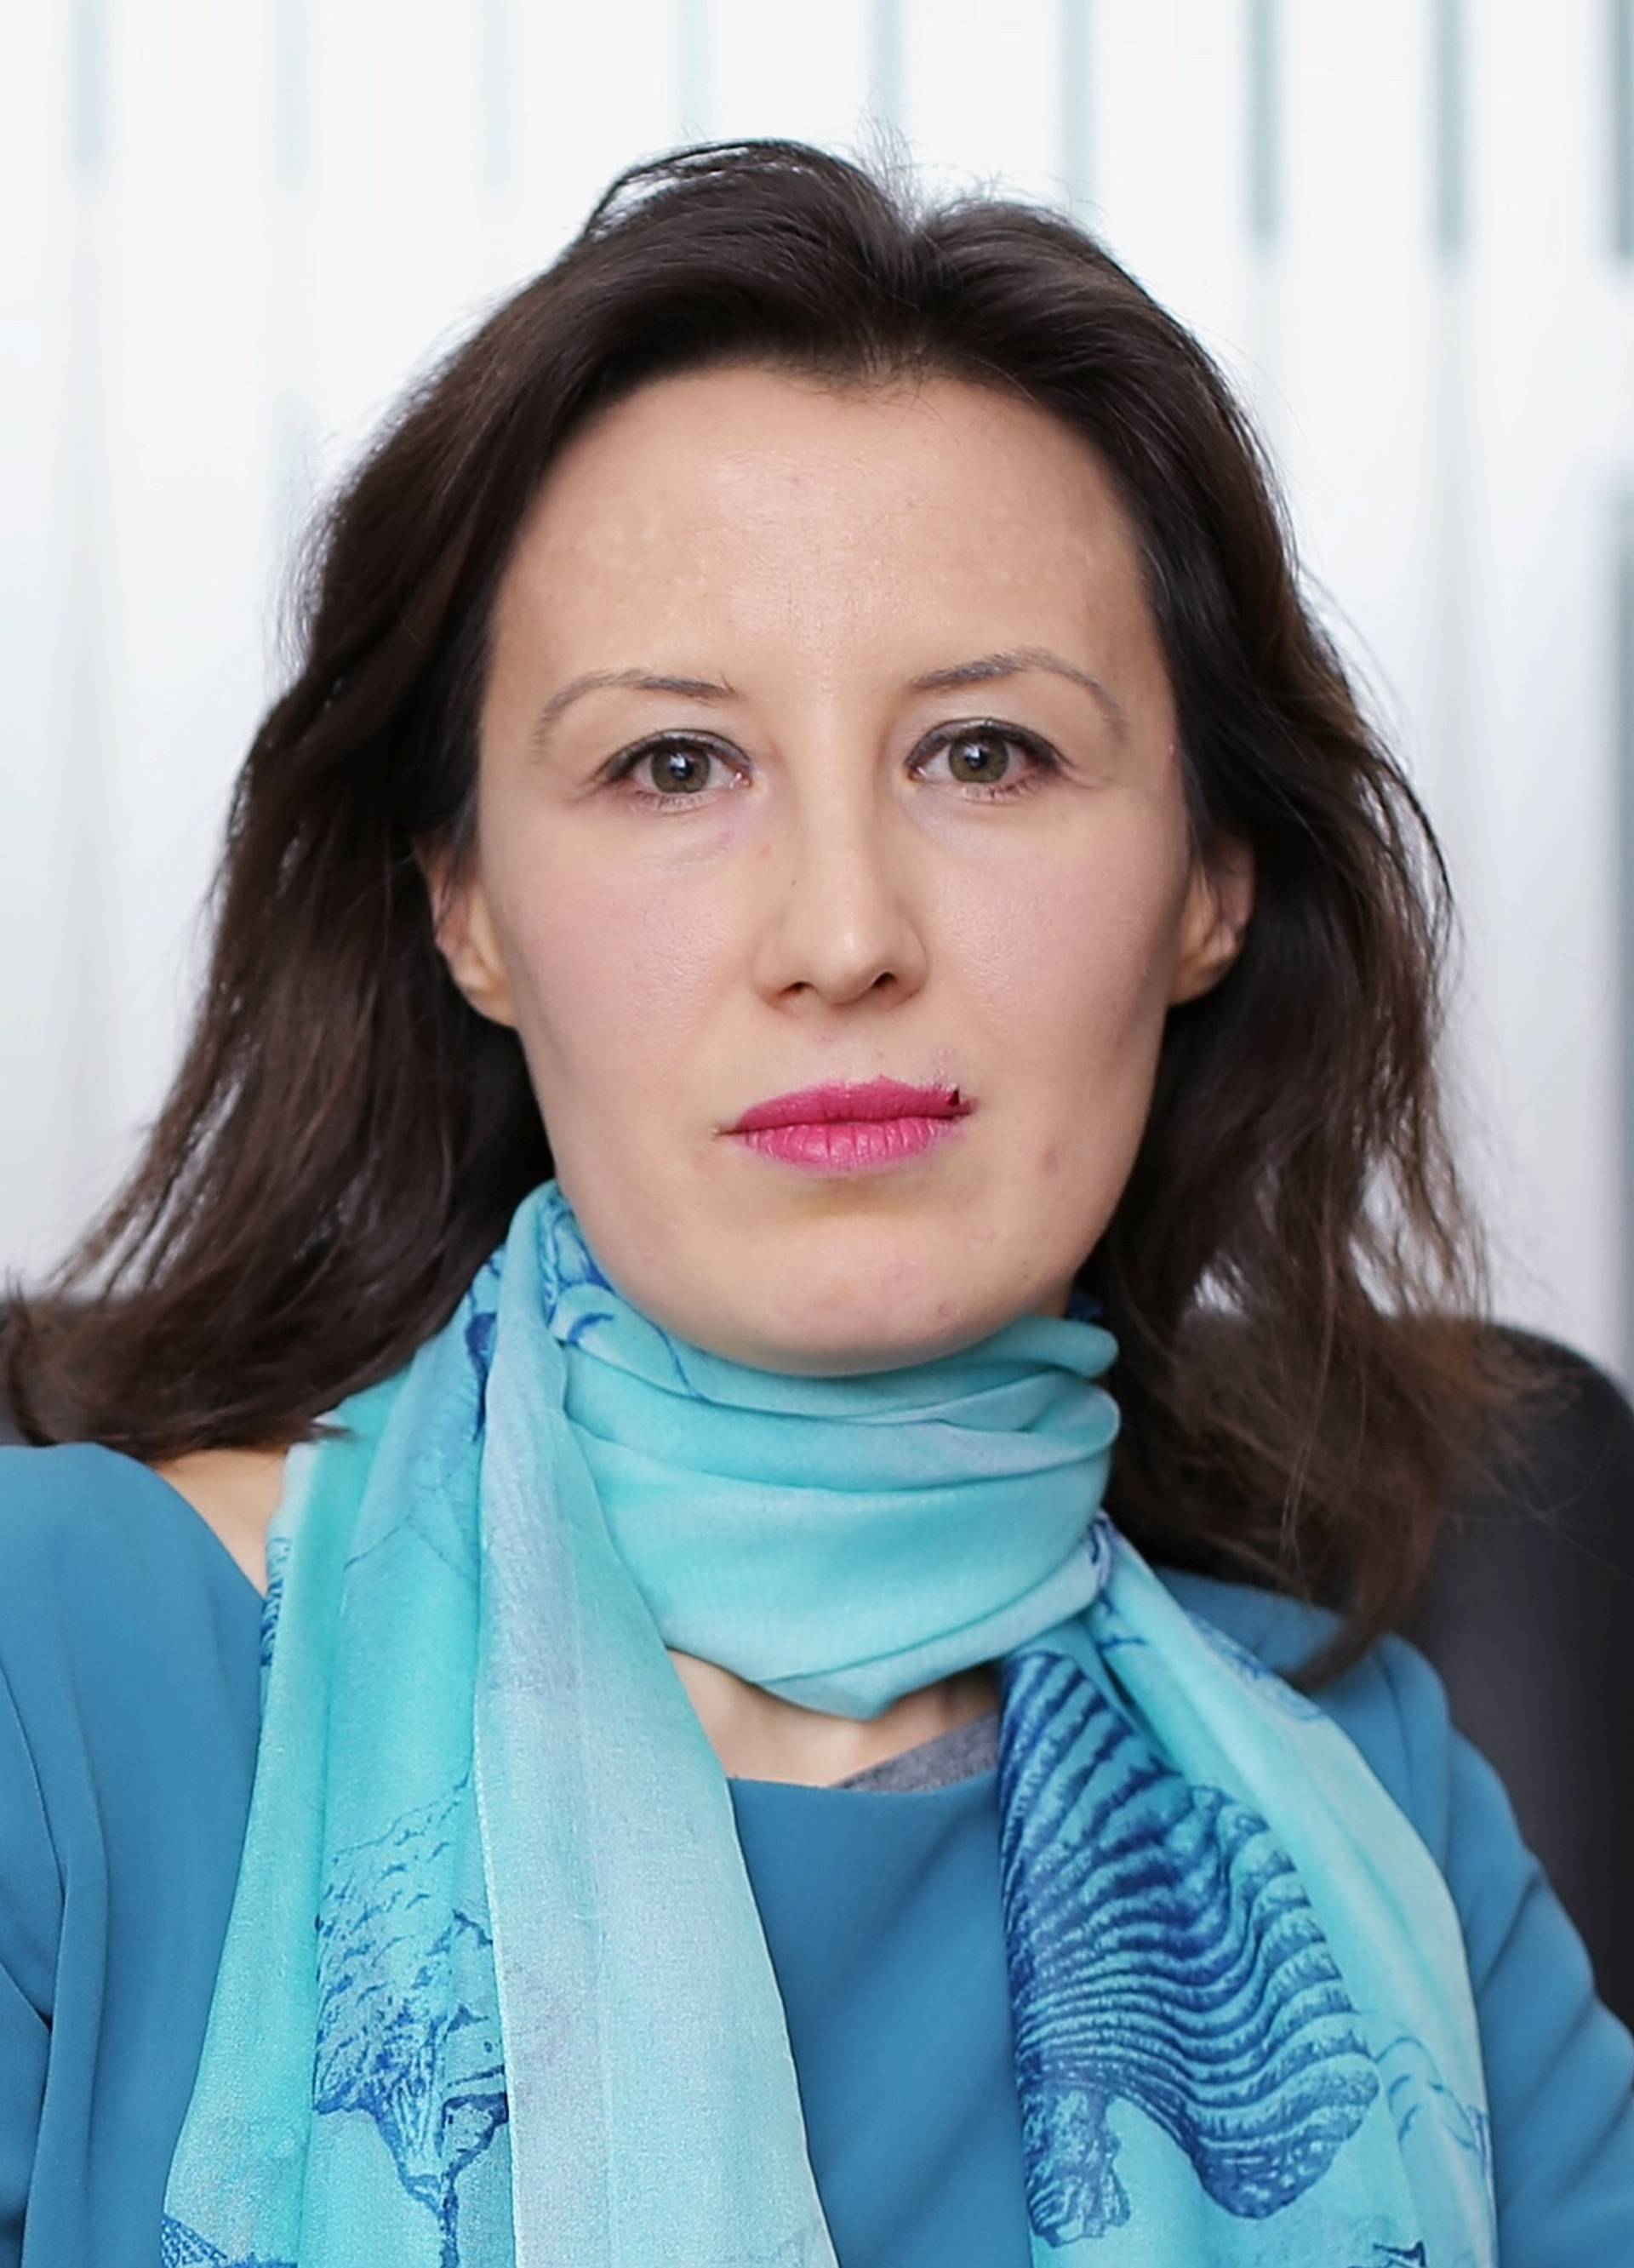 Dalija Oreskovic